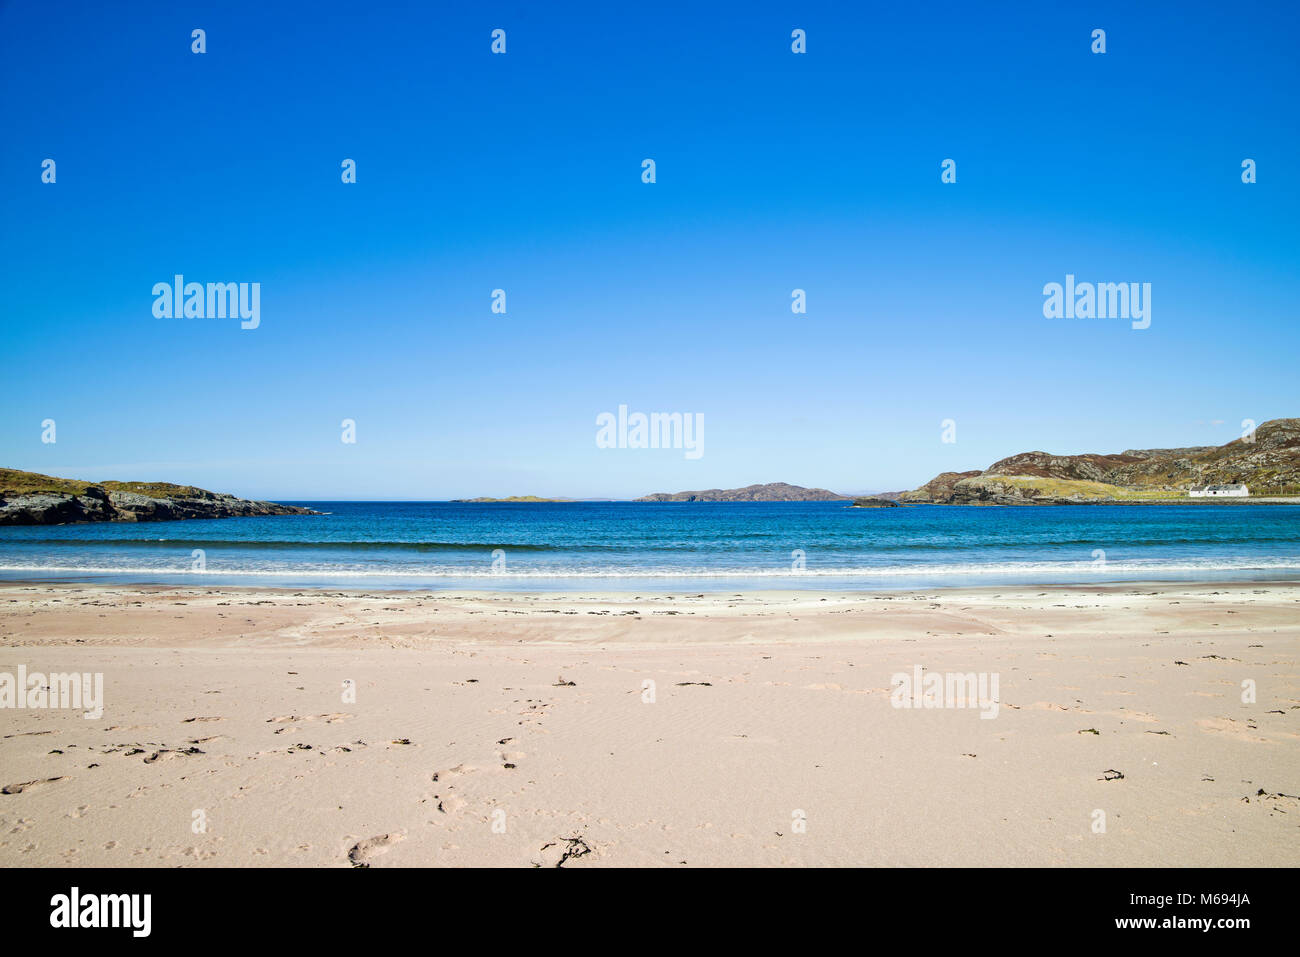 Profondo blu del cielo e mare calmo presso la splendida spiaggia sabbiosa di Clashnessie Bay, Assynt, sulla costa nord 500 route, Sutherland, Highlands scozzesi UK. Foto Stock